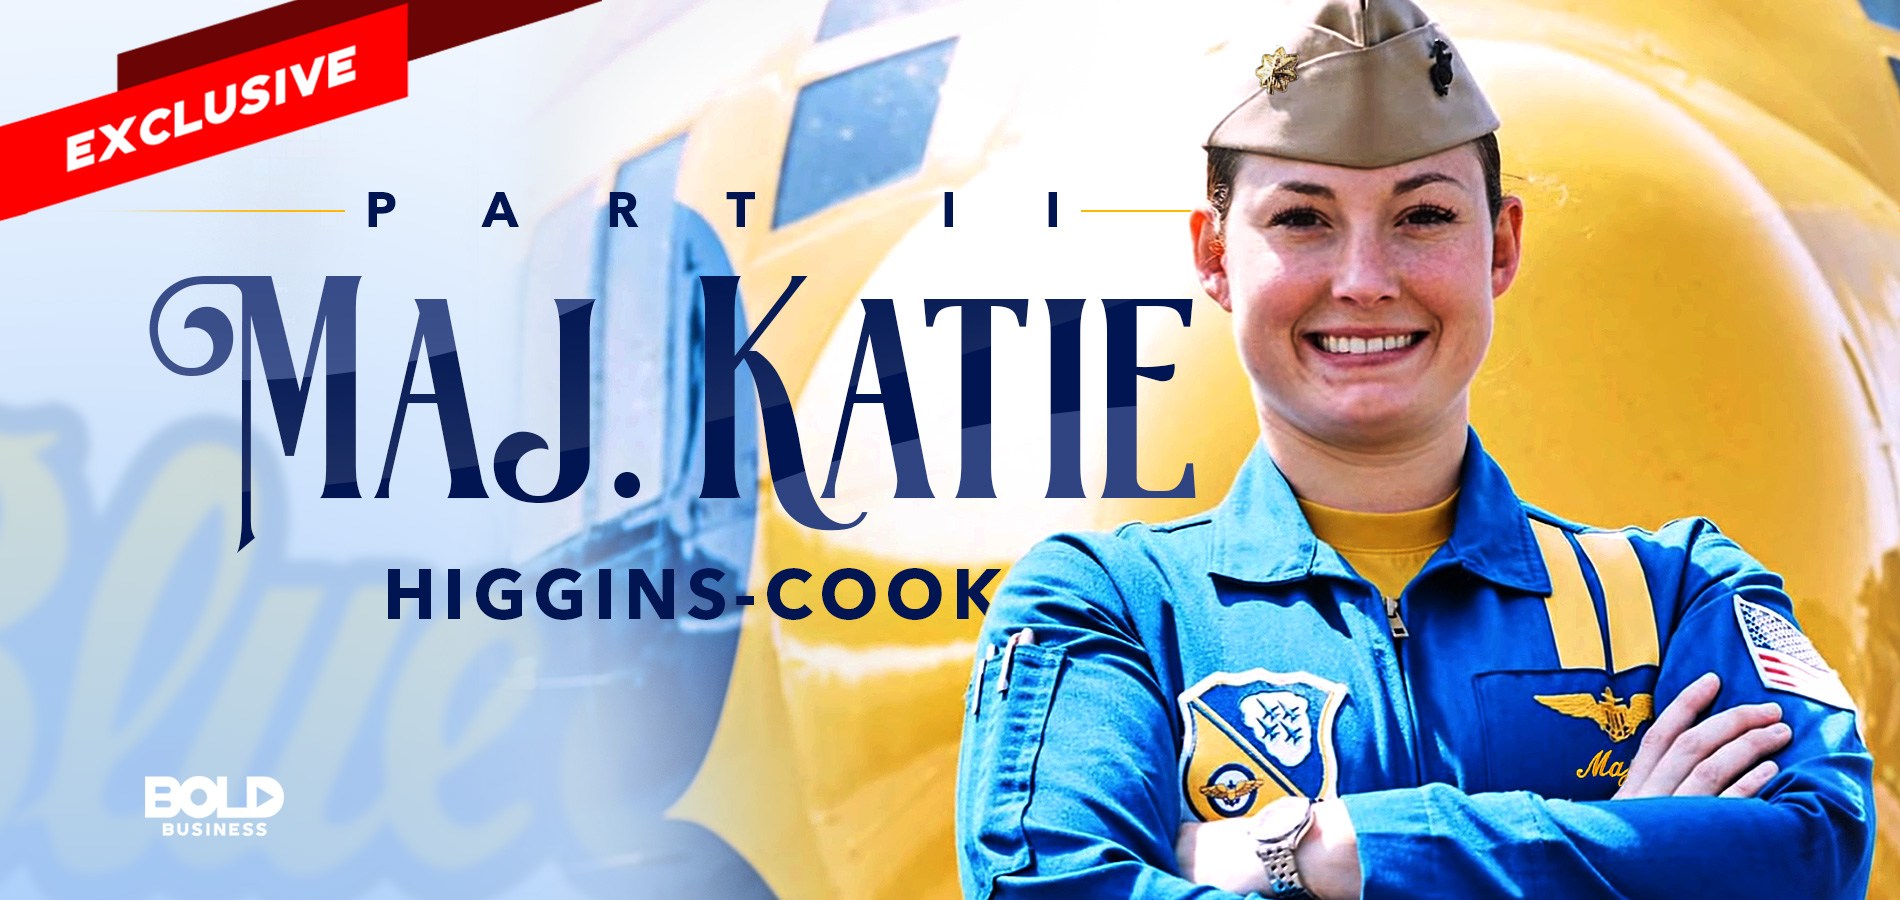 katie higgins cook in her blue angels uniform